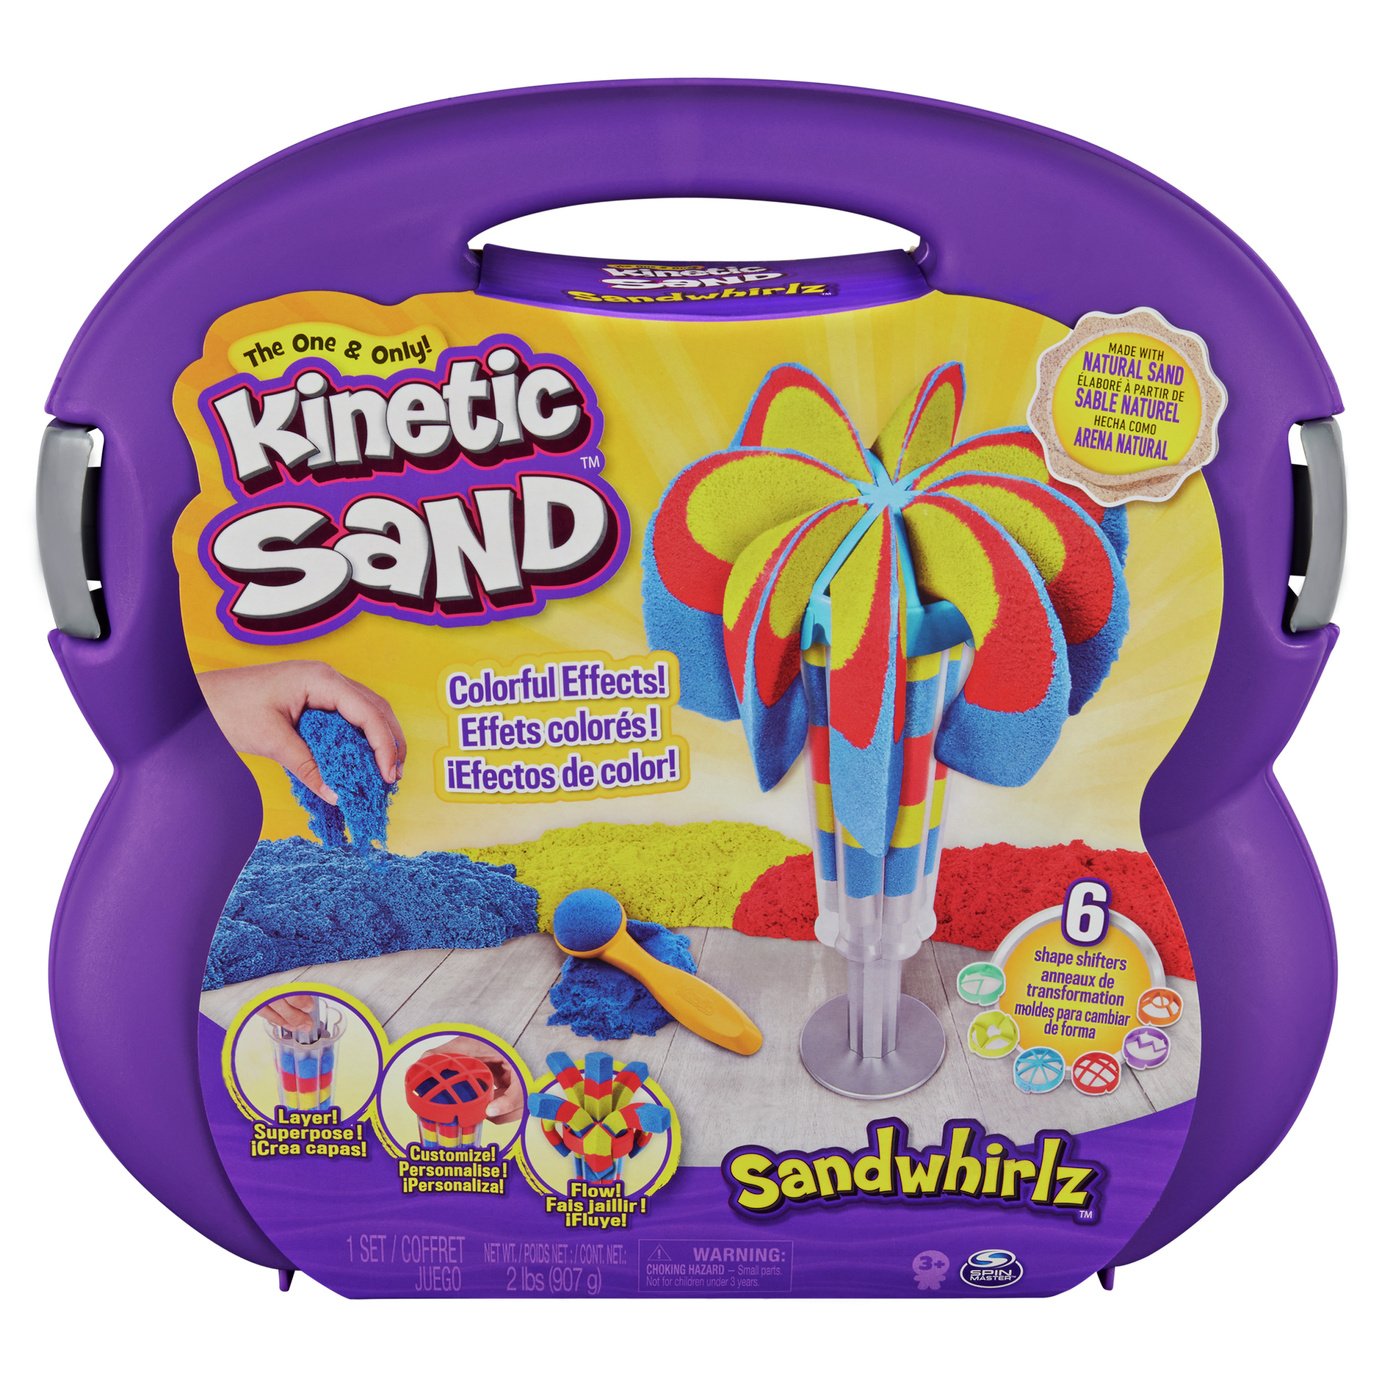 Kinetic Sand Sandwhirlz Playset Review